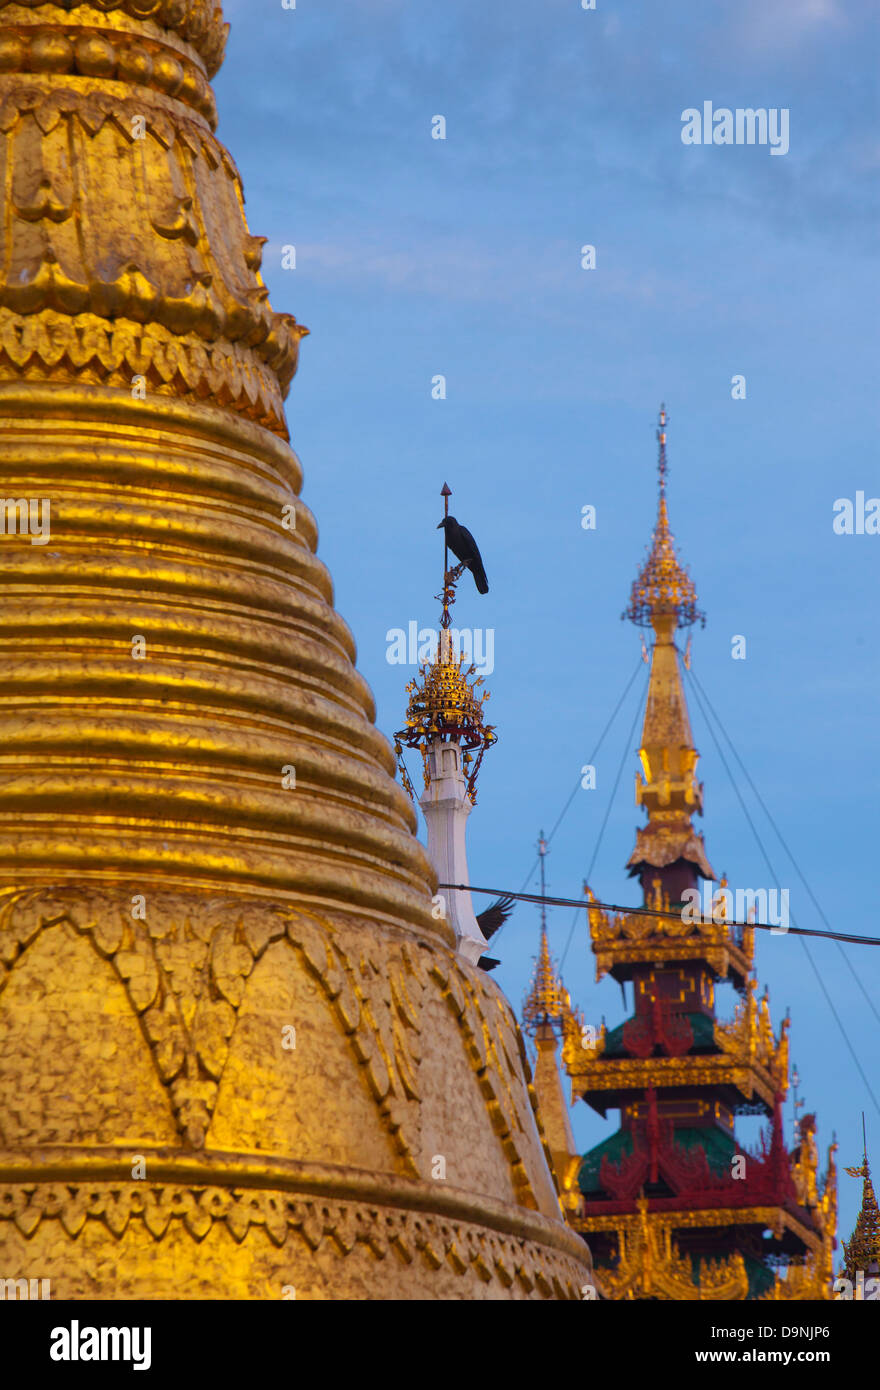 Un corbeau de perchoirs élevés chez le golden tours de la Schwedagon, temple sacré de birmanie au coeur de Rangoon. Banque D'Images